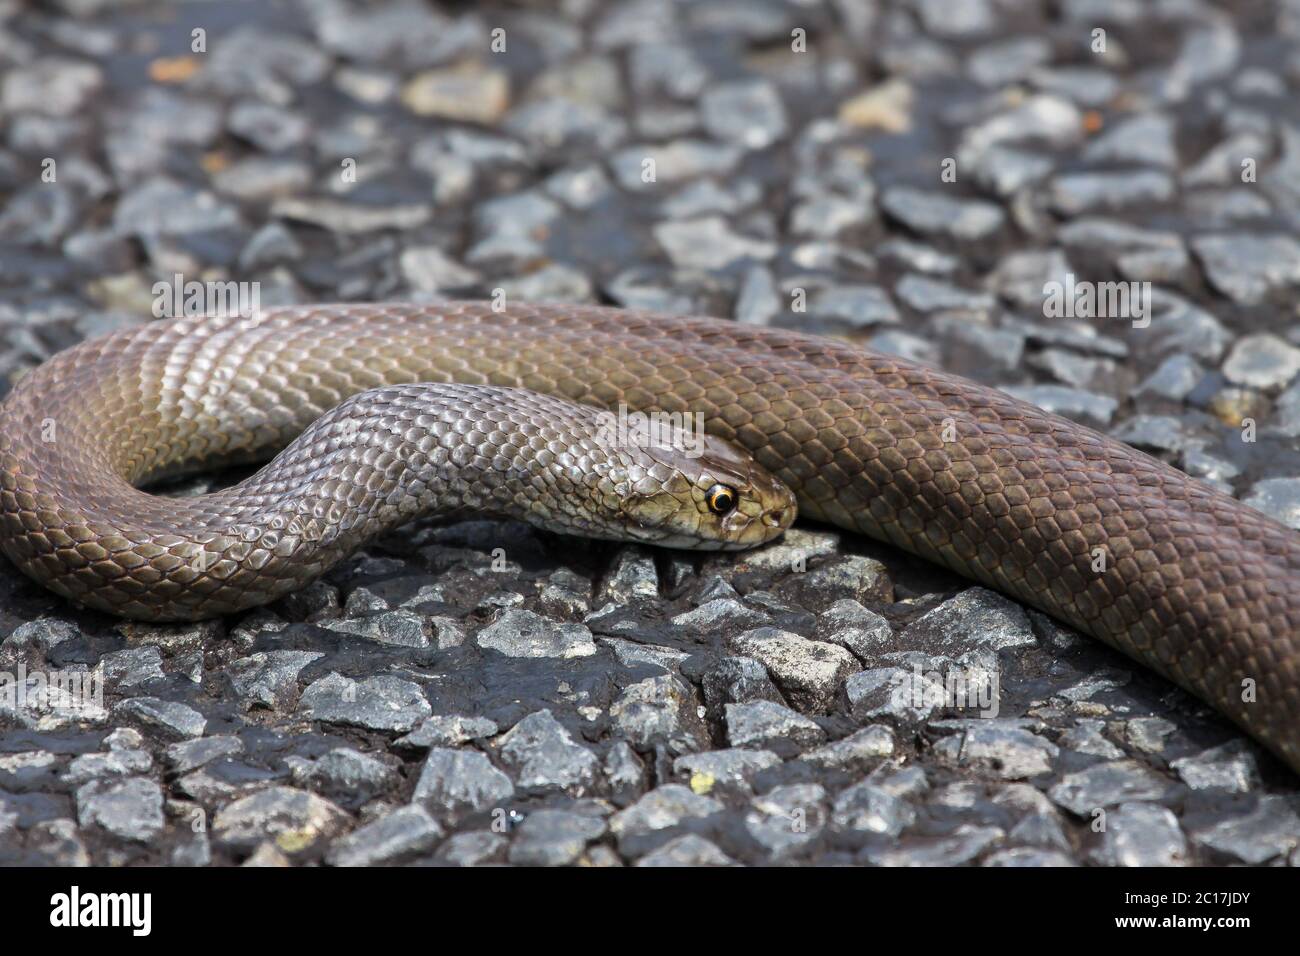 Dangerous Dugite snake lying on the road, Western Australia Stock Photo